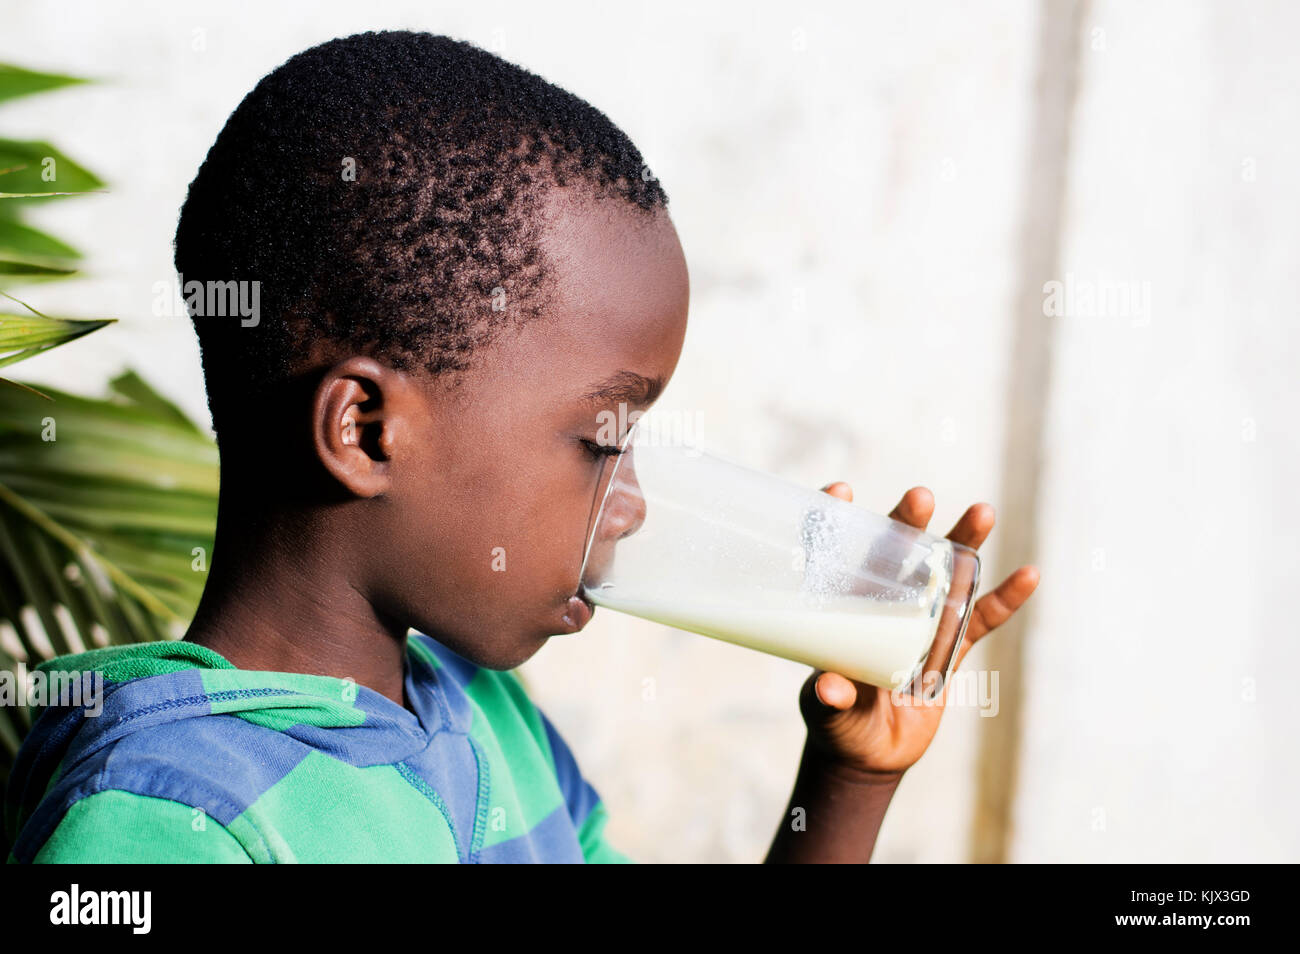 Junge trinkt Milch in ein Glas. Stockfoto